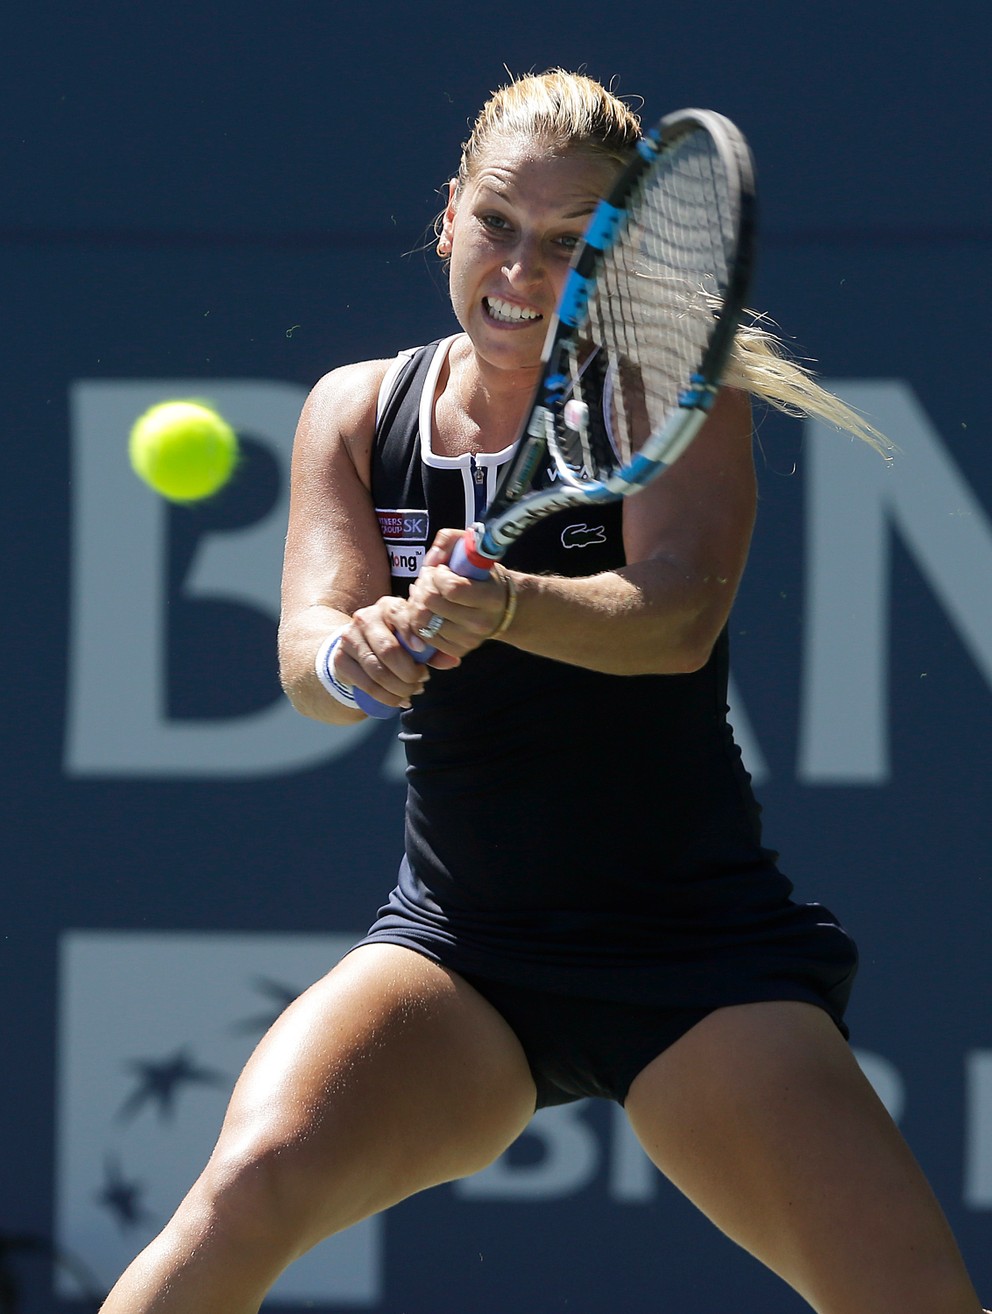 Minulý týždeň Cibulková postúpila do semifinále turnaja v Stanforde. Teraz začala úspešne v Montreale.